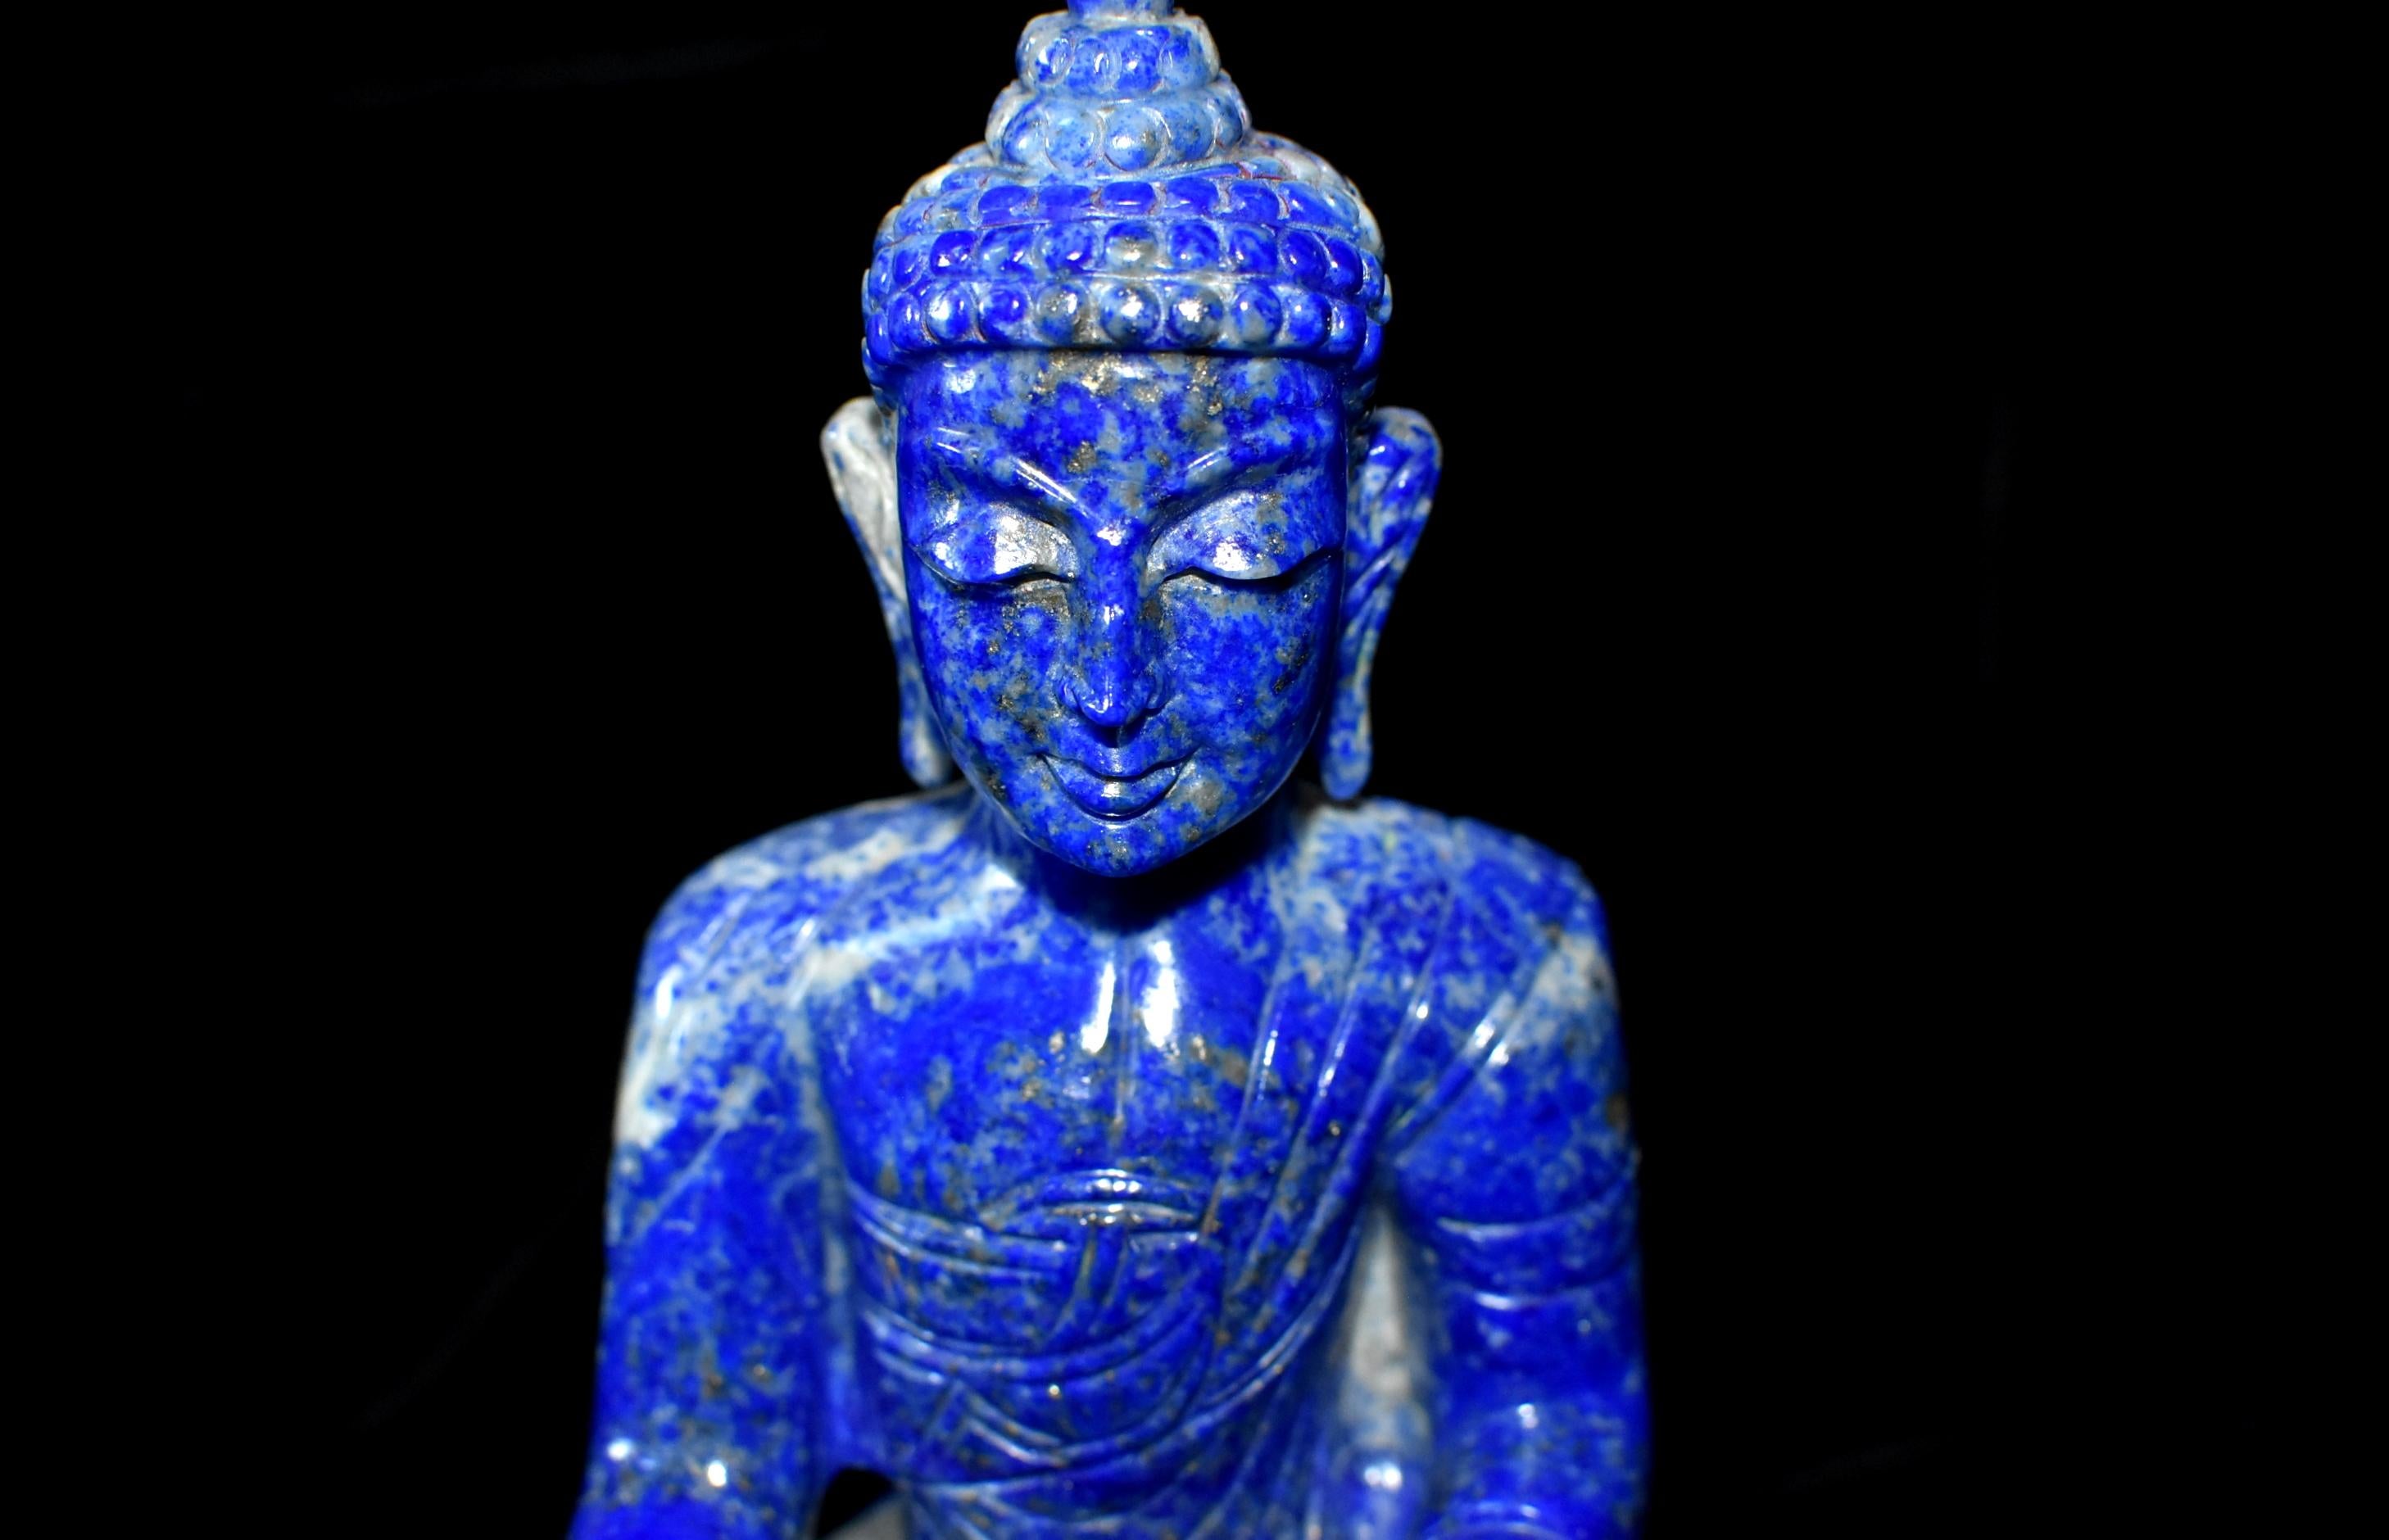 Schöne:: 1. Klasse:: Fein:: alle natürlichen Lapis Stein Statue von Buddha:: von einem Meister Steinschnitzer geschnitzt. Die Farbe des Lapis ist ein sattes:: leuchtendes Kobaltblau mit natürlichen Streifen aus Weiß und Gold. Der abgebildete Buddha